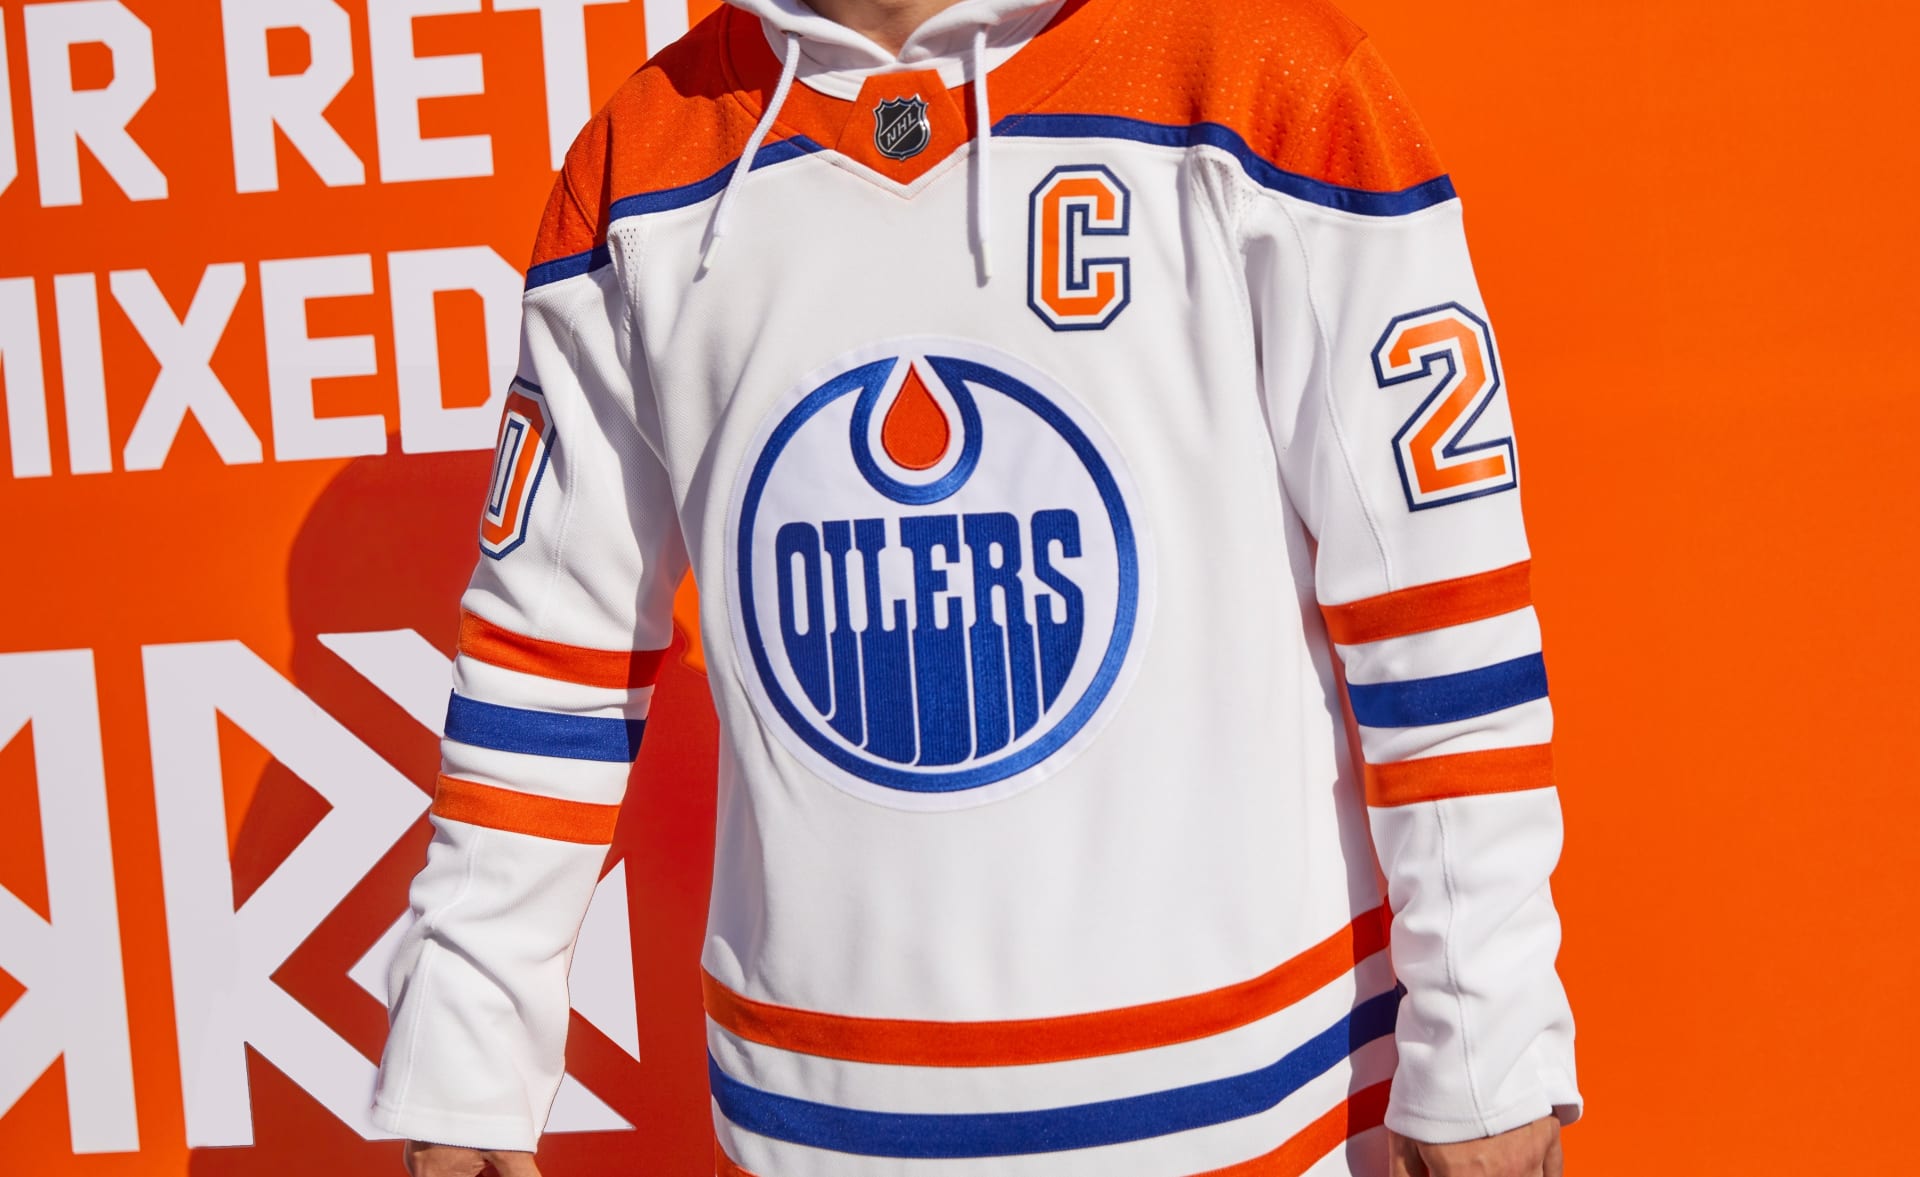 EDMONTON OILERS | Když legendární Wayne Gretzky poprvé vstoupil do NHL, psal se rok 1979. Byl to také premiérový ročník Edmontonu v zámořské soutěži. A právě na inaugurační sezonu dají „Olejáři“ zavzpomínat. Místo „The Great One“ bude oblékat bílo-oranžový dres jedna z největších hvězd současnosti Connor McDavid.